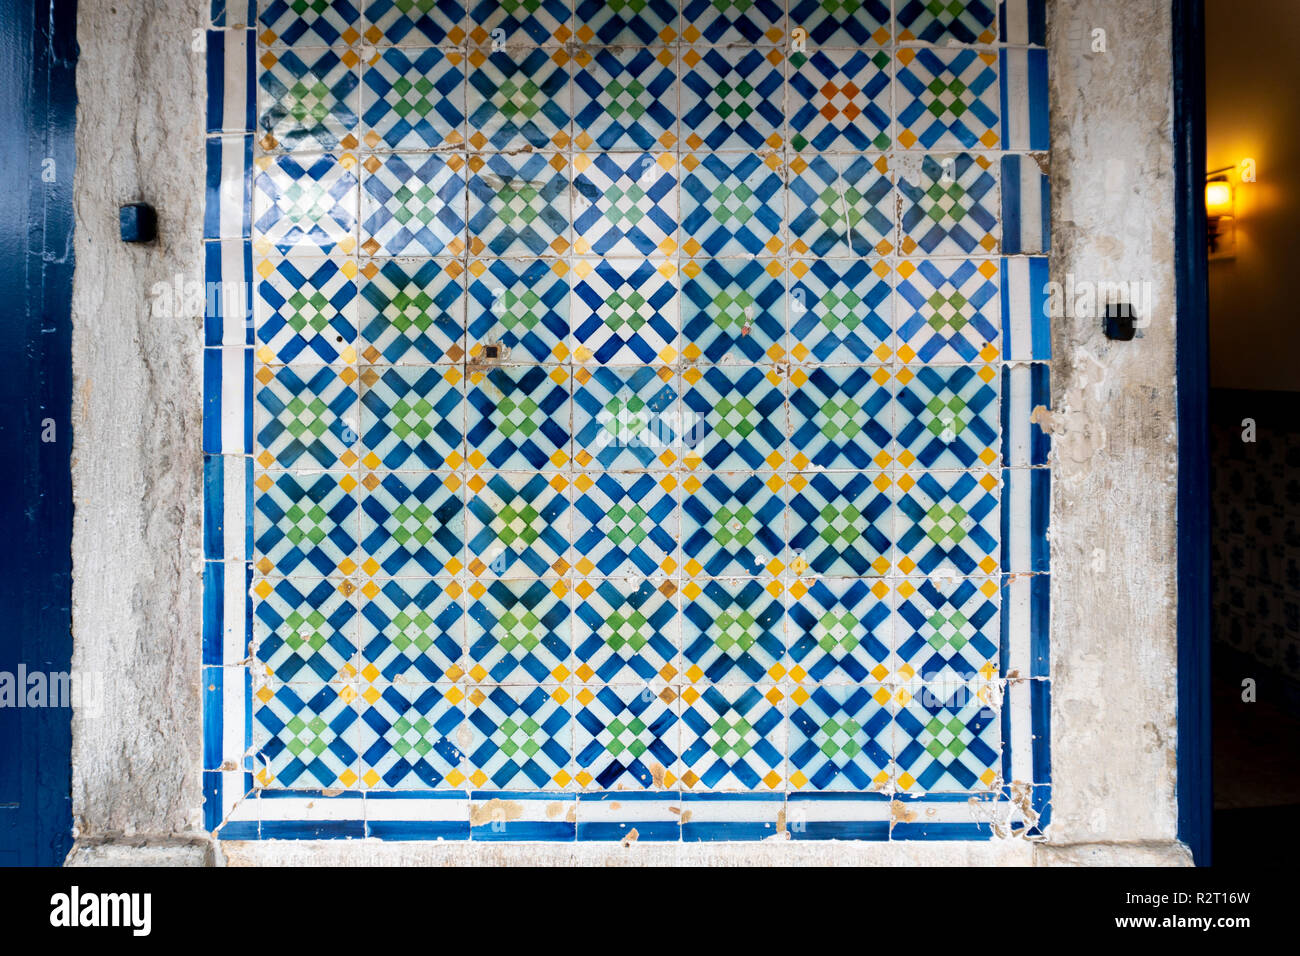 Bunte Kacheln von Lissabon genannt Azulejo einer portugiesischen glasierten Fliesen. Stockfoto